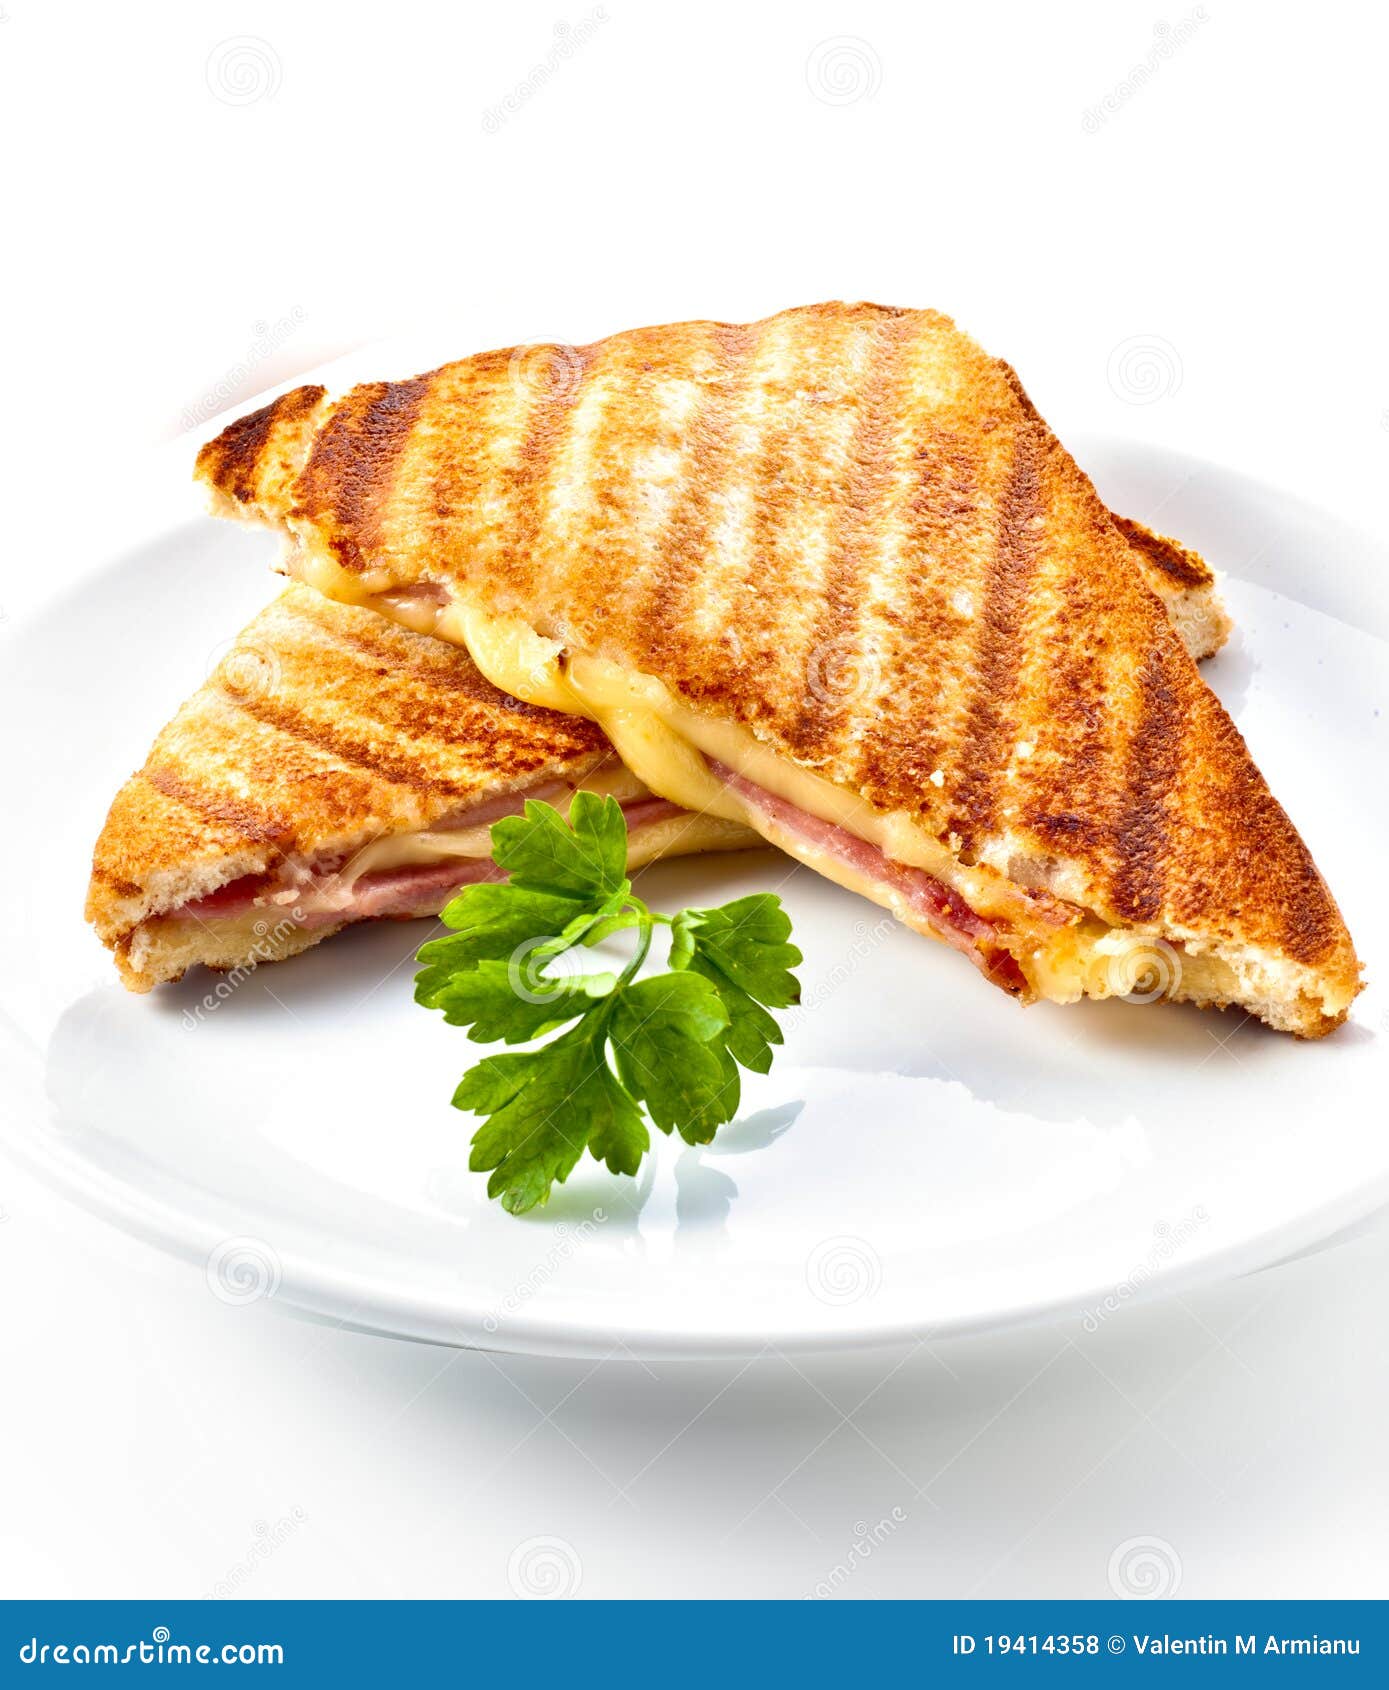 ham and cheese panini sandwich